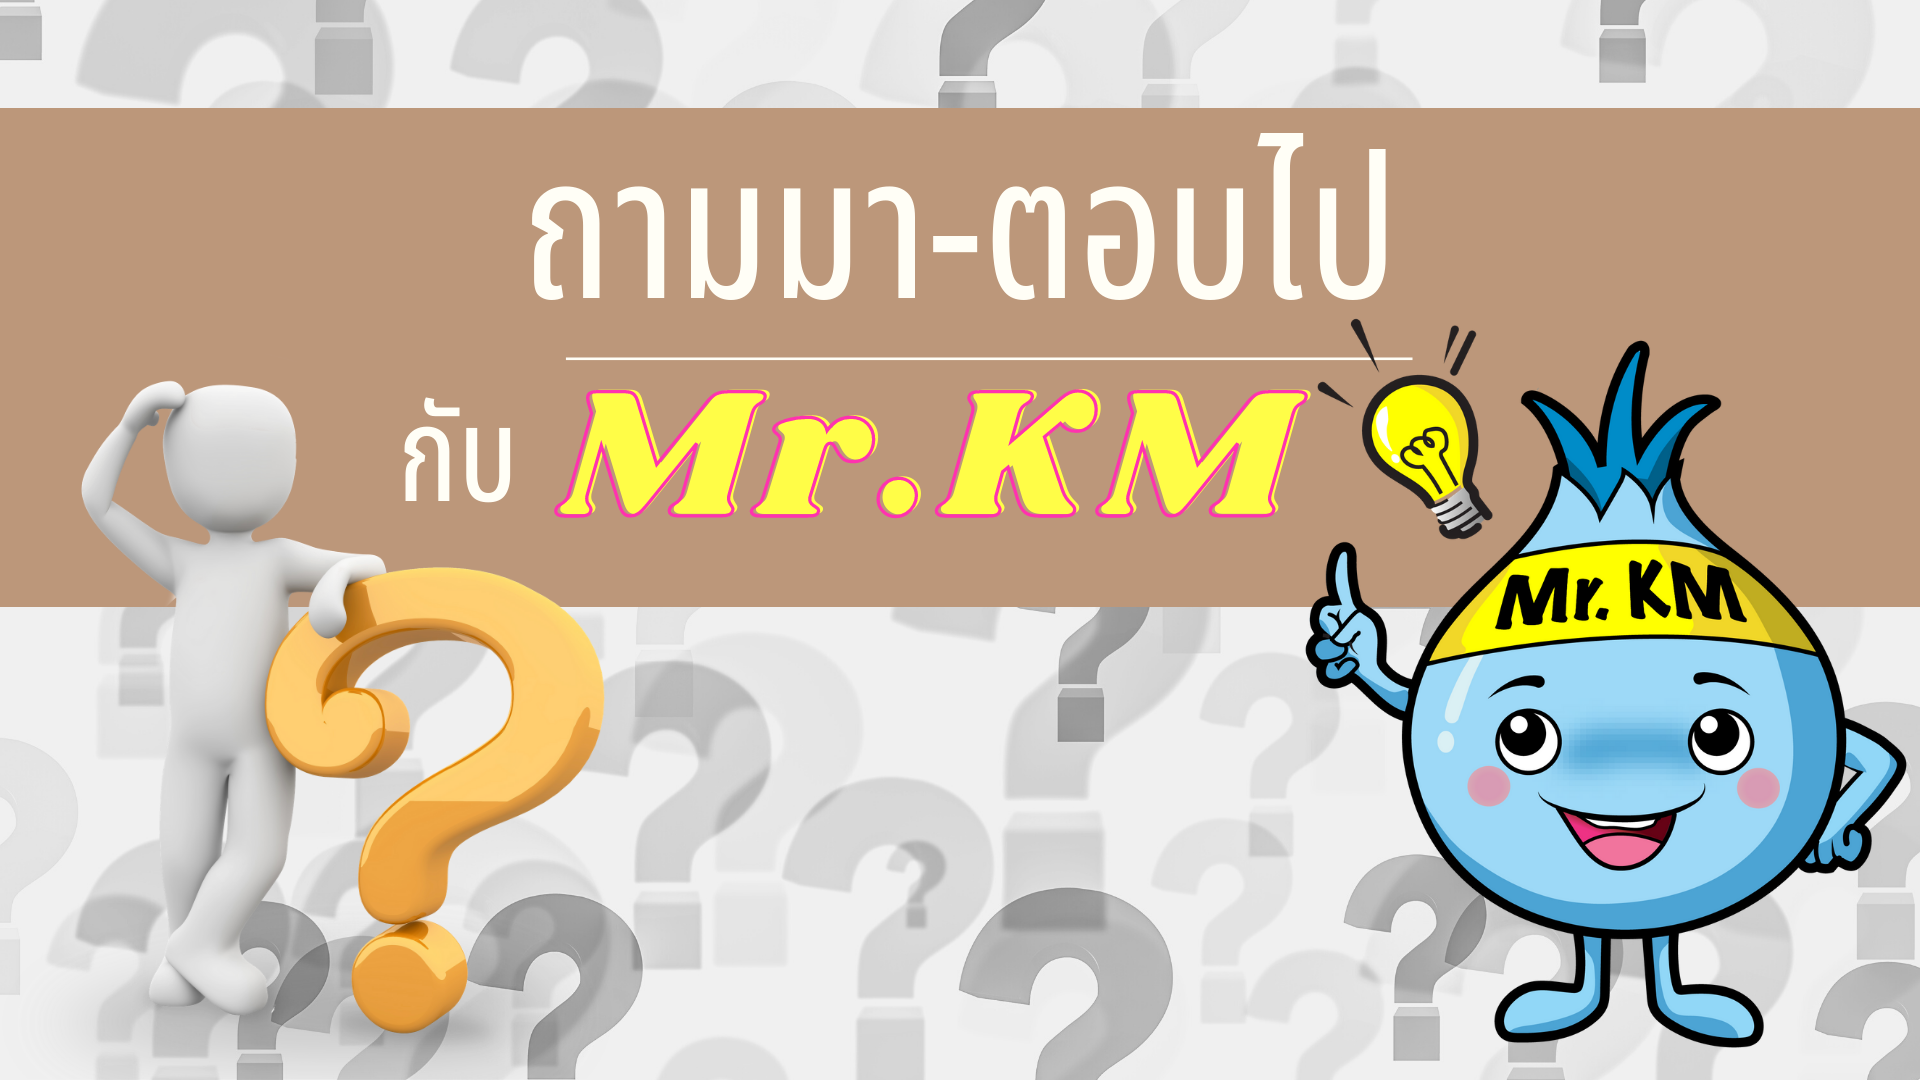 ถามมา-ตอบไป กับ Mr.KM